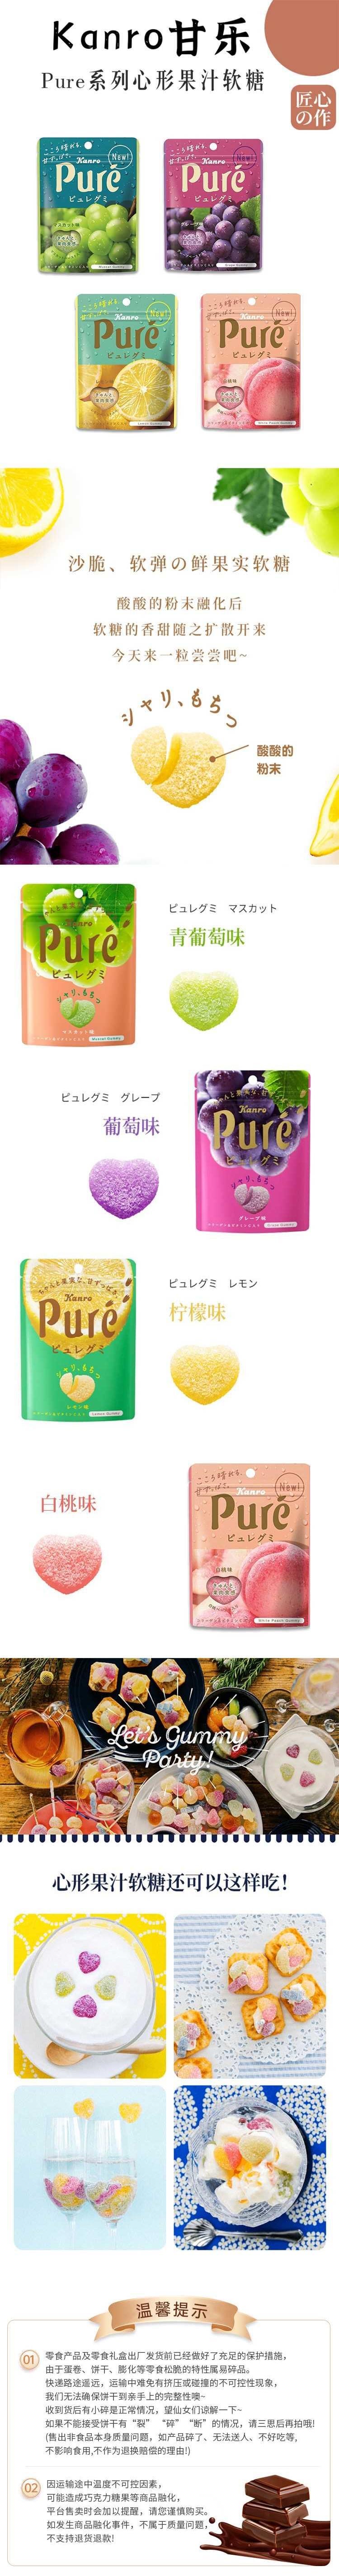 【日本直邮】KANRO甘乐 Pure果肉果汁软糖 56g 青提味